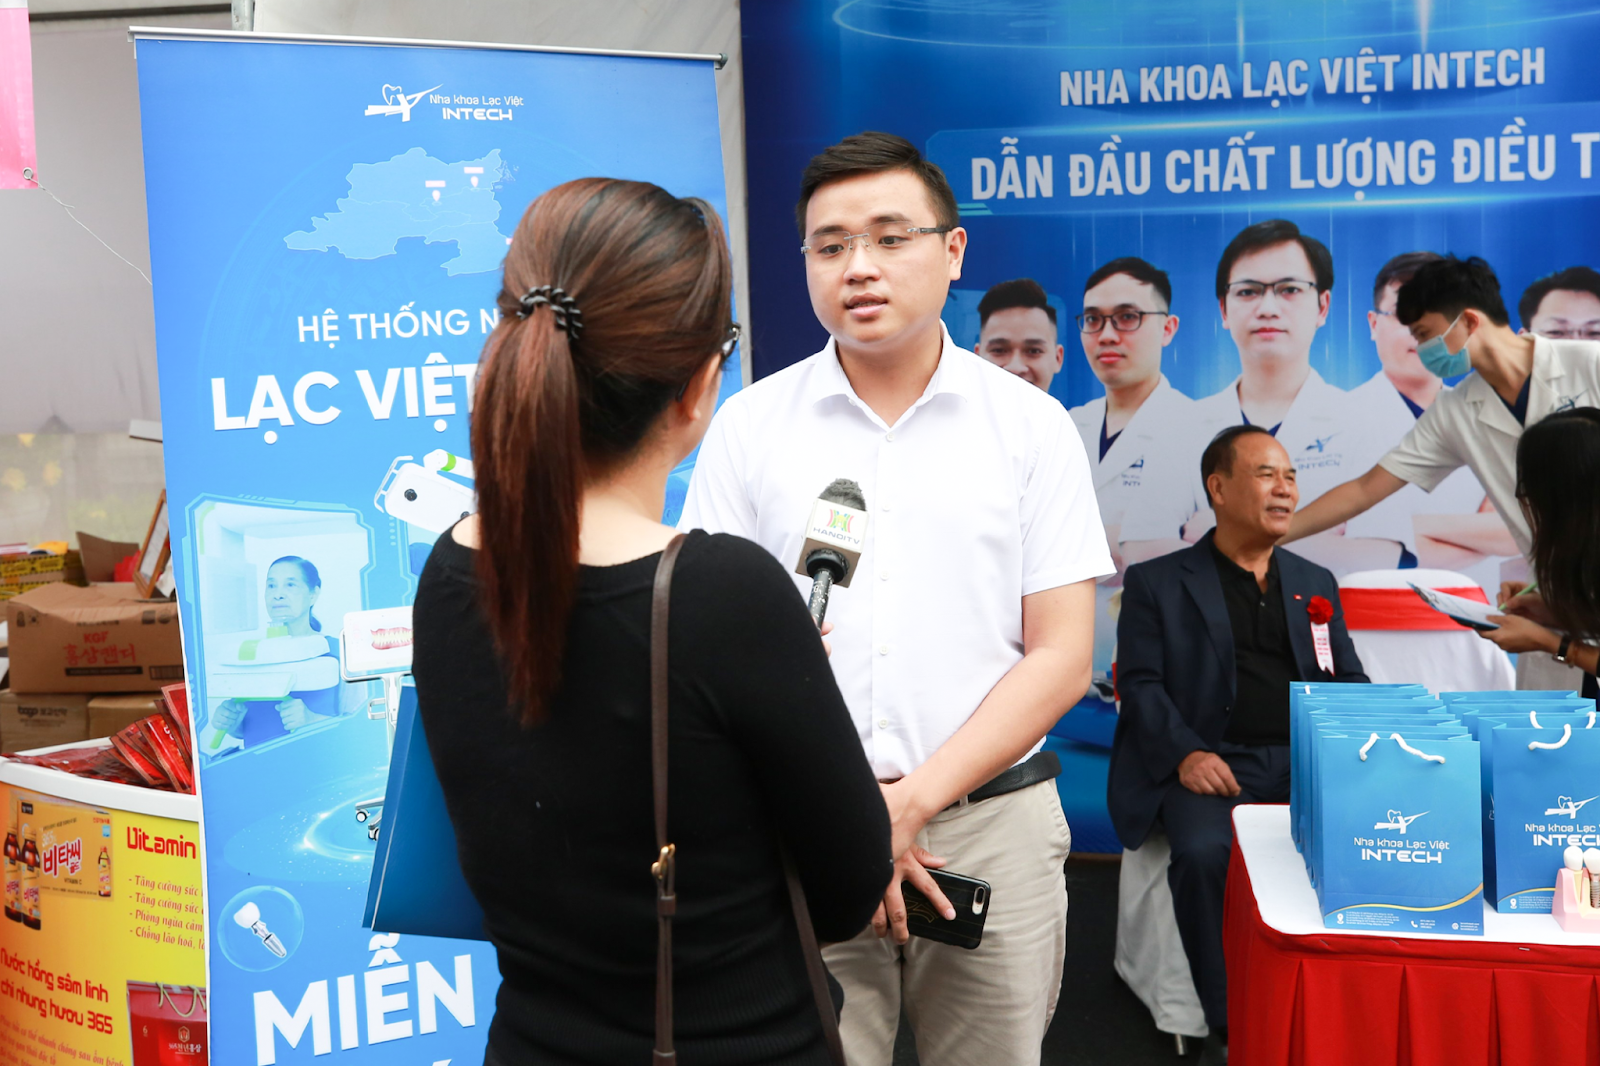 Nha khoa Lạc Việt Intech thăm khám miễn phí tại sự kiện “Ngày hội sức khỏe cộng đồng năm 2022”  - 2